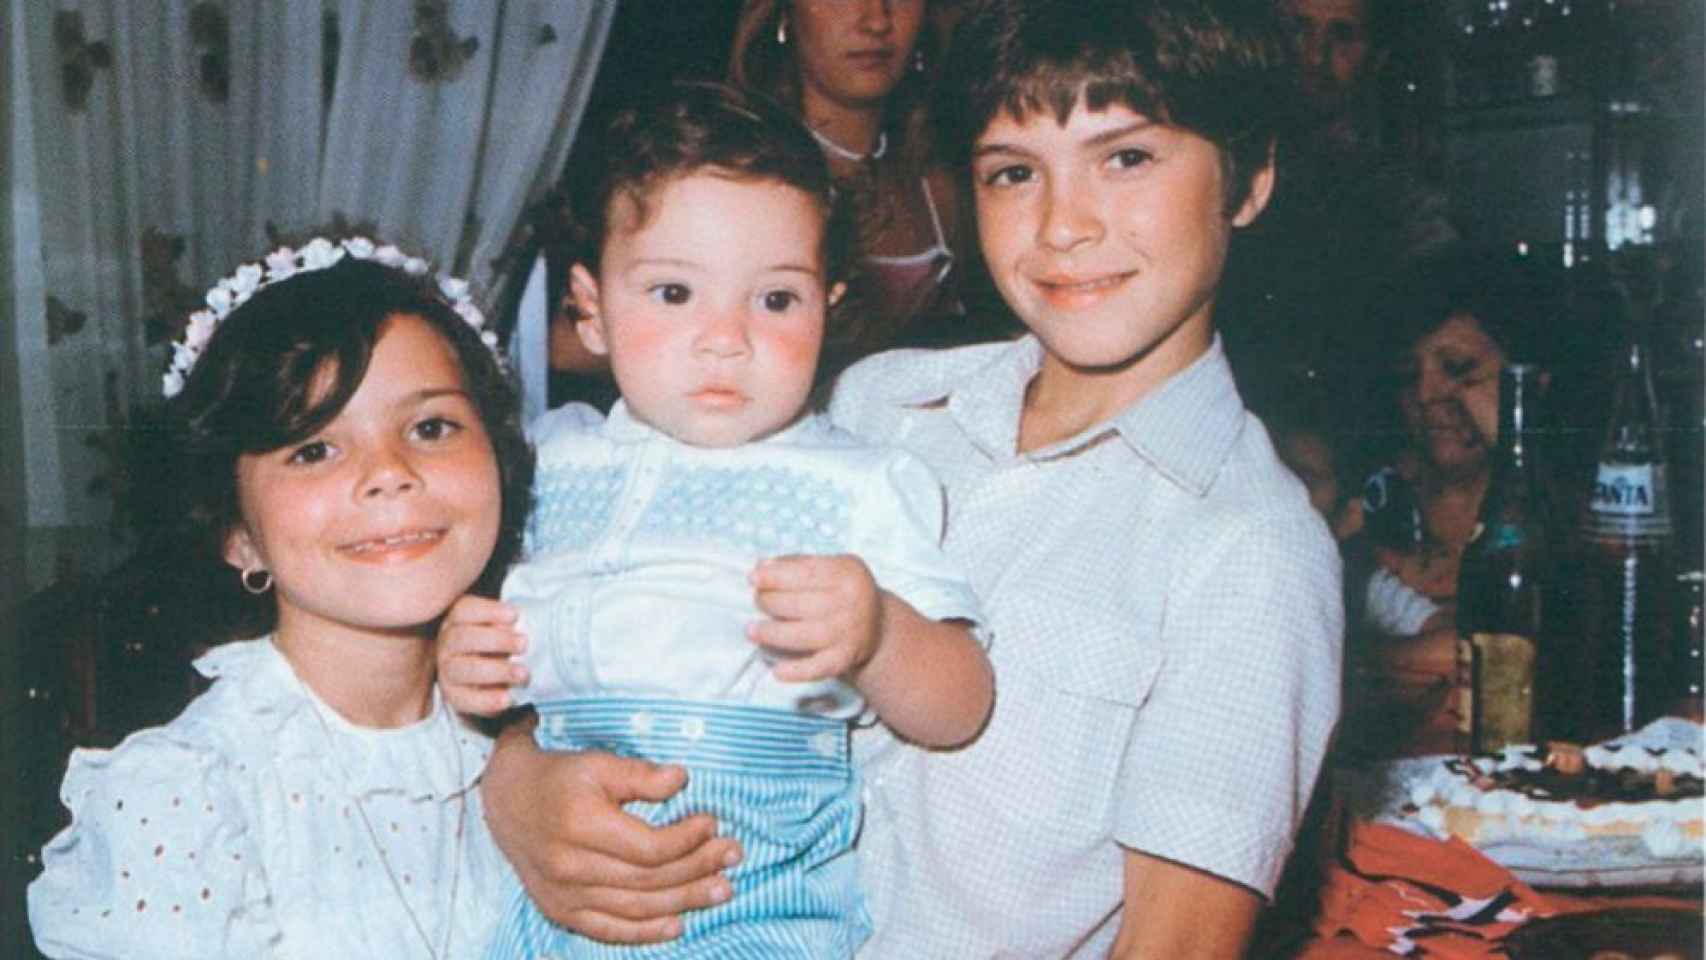 David Bisbal de bebé (en el centro) junto a sus hermanos, María del Mar y José María.